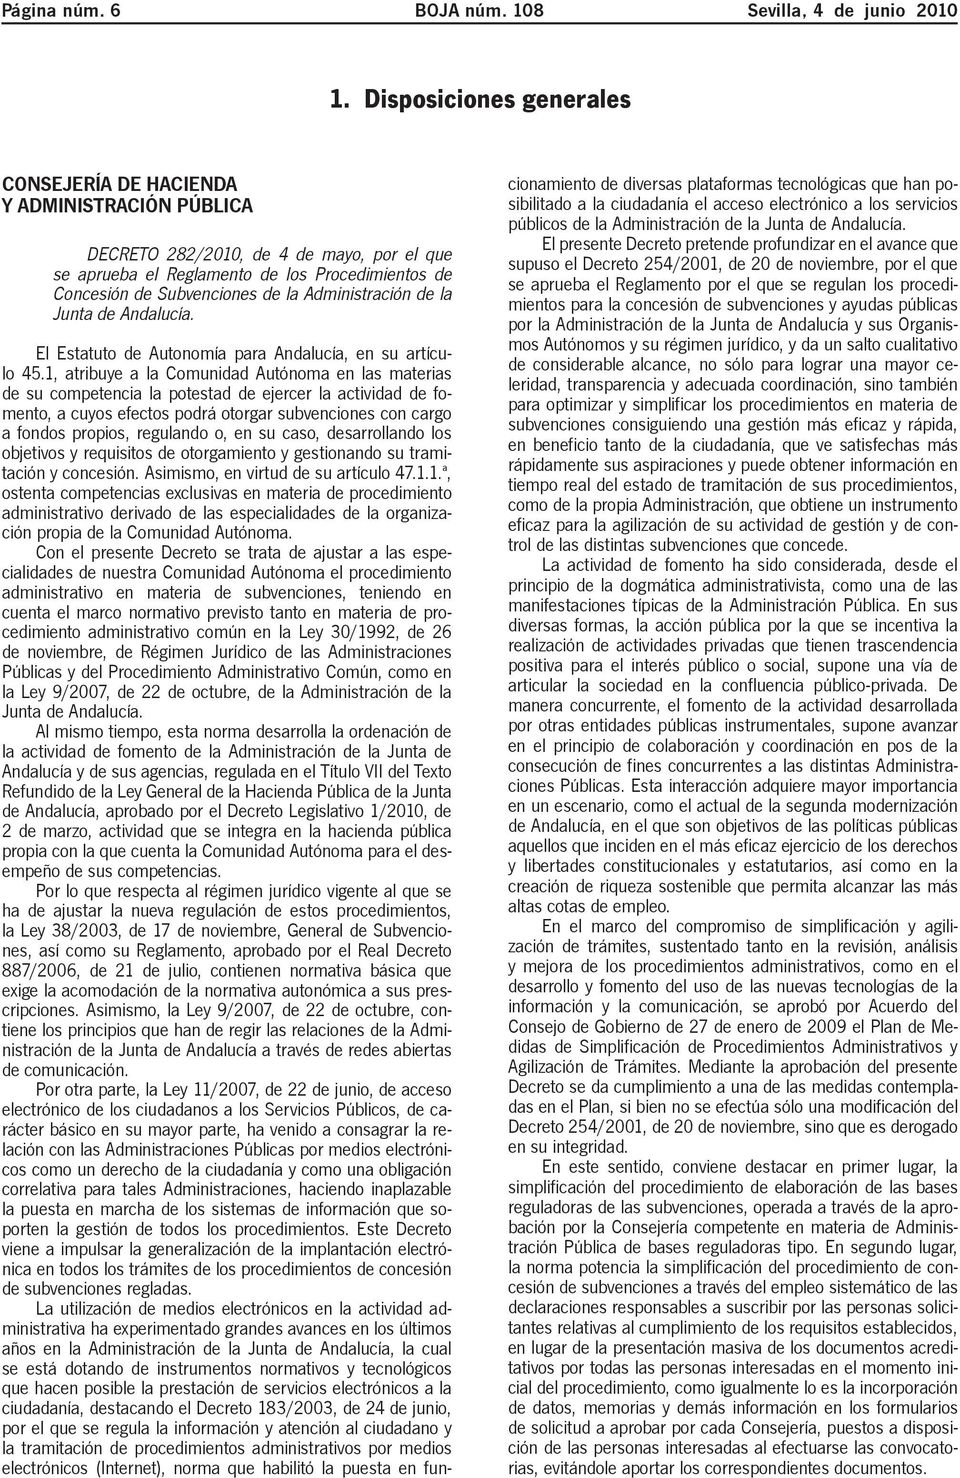 Administración de la Junta de Andalucía. El Estatuto de Autonomía para Andalucía, en su artículo 45.